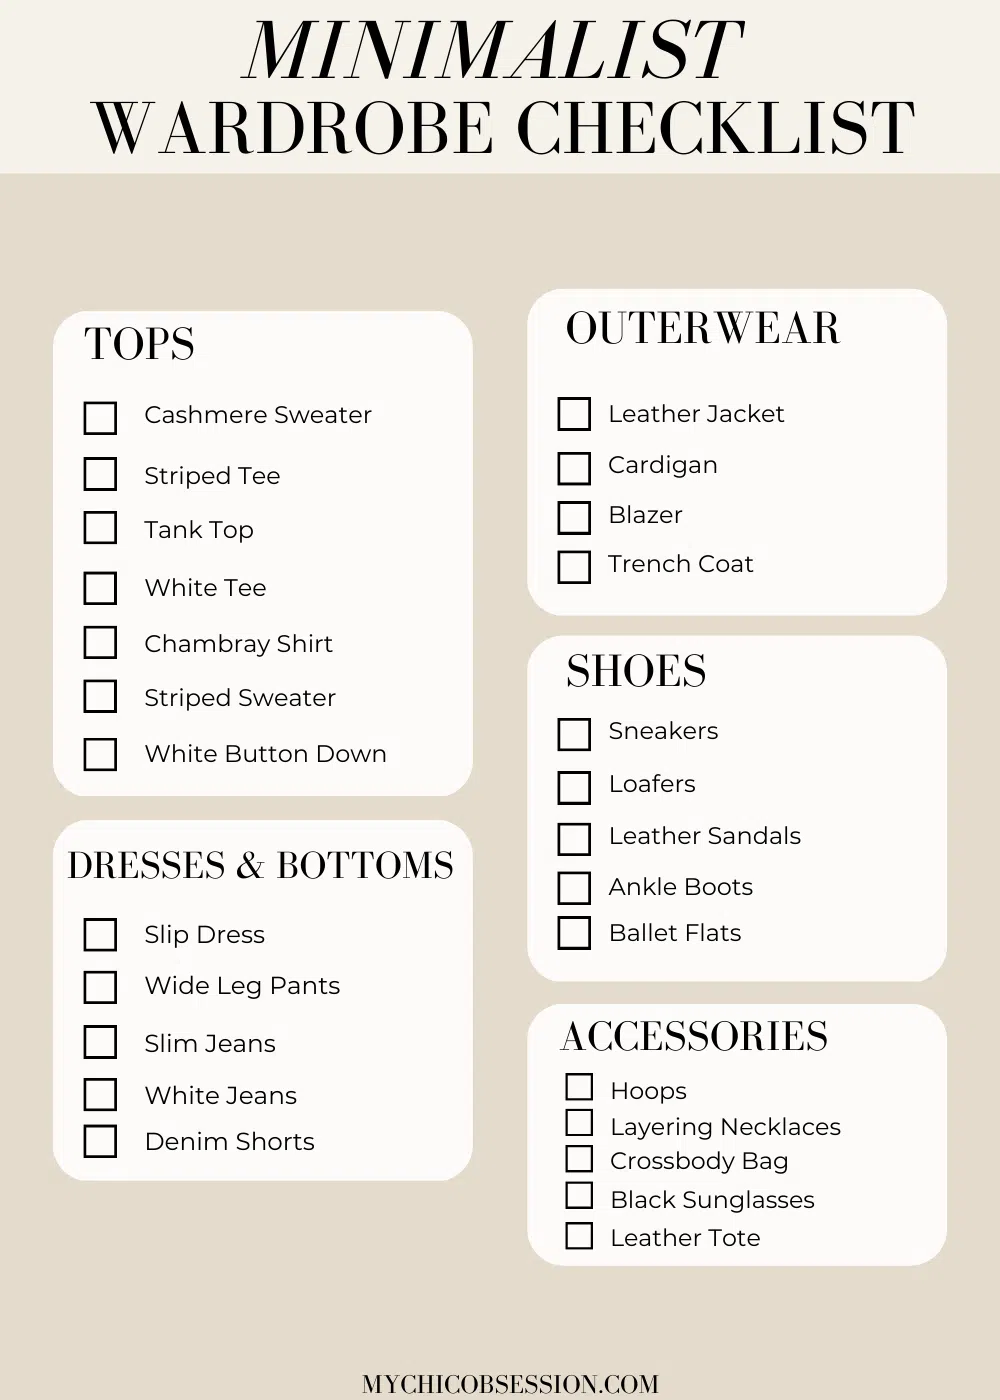 minimalist wardrobe checklist 2